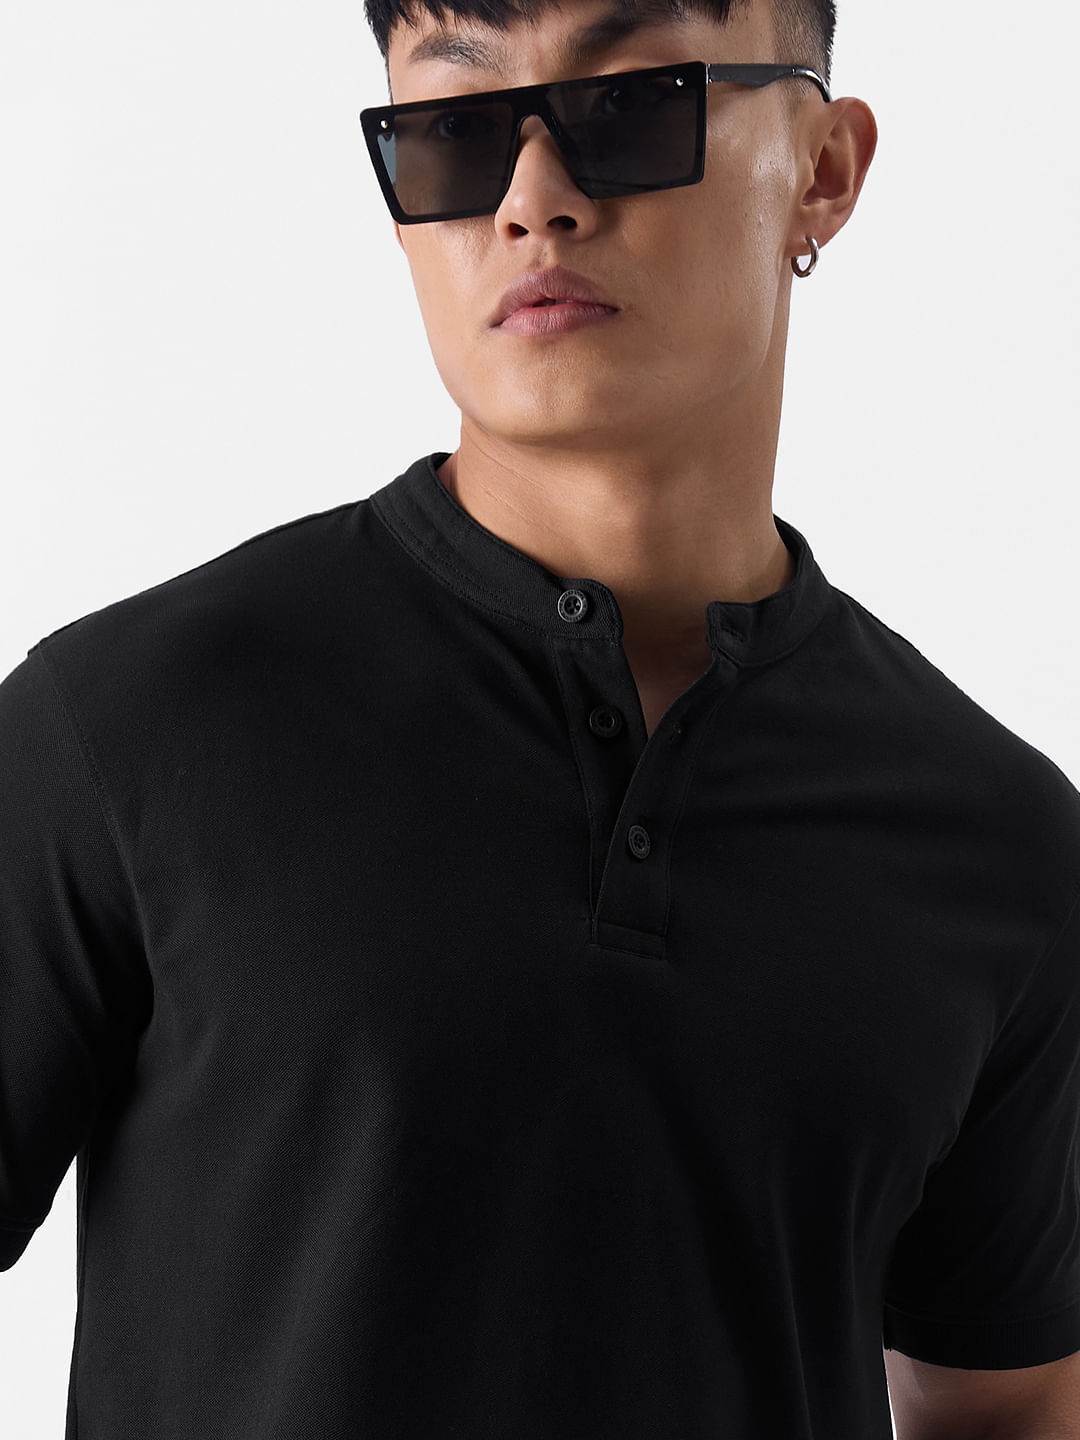 Men's Solids: Midnight Black Mandarin Polo T-Shirt